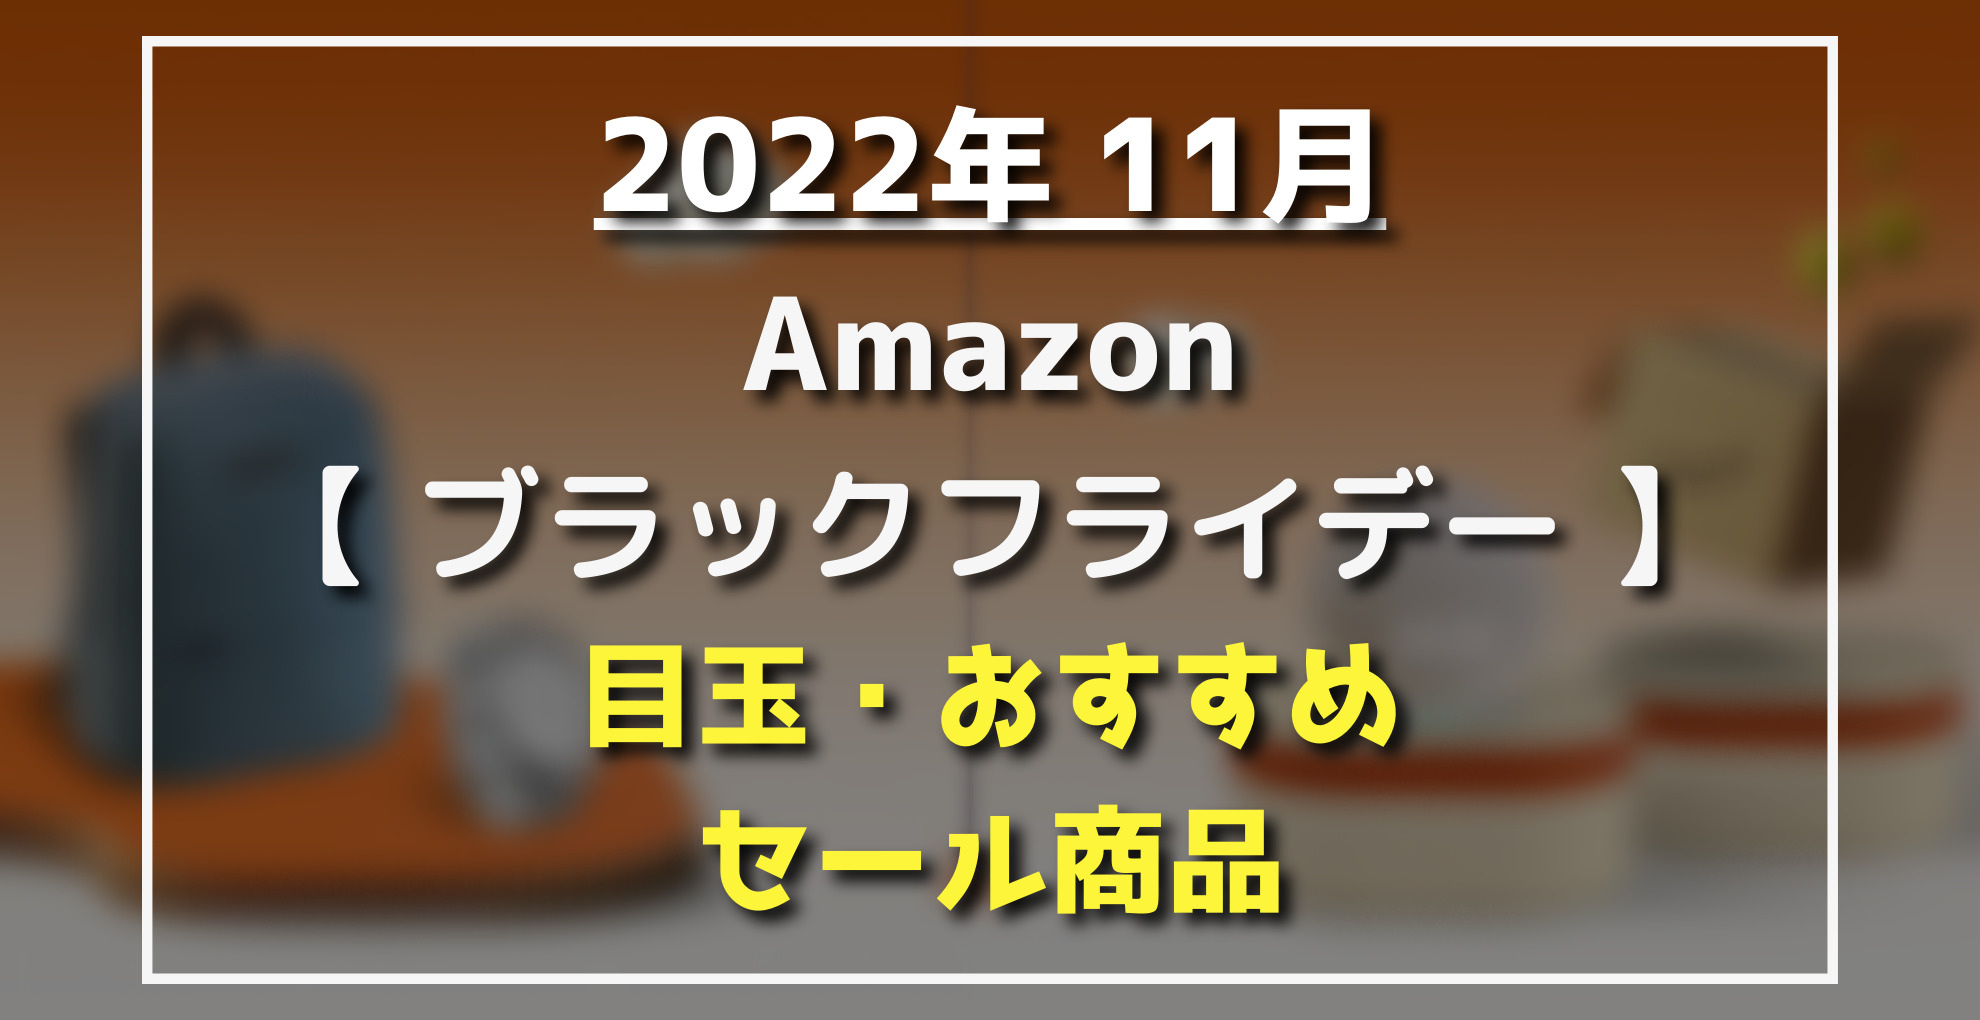 2022】Amazonブラックフライデー おすすめ・割引目玉(Amazonデバイス 